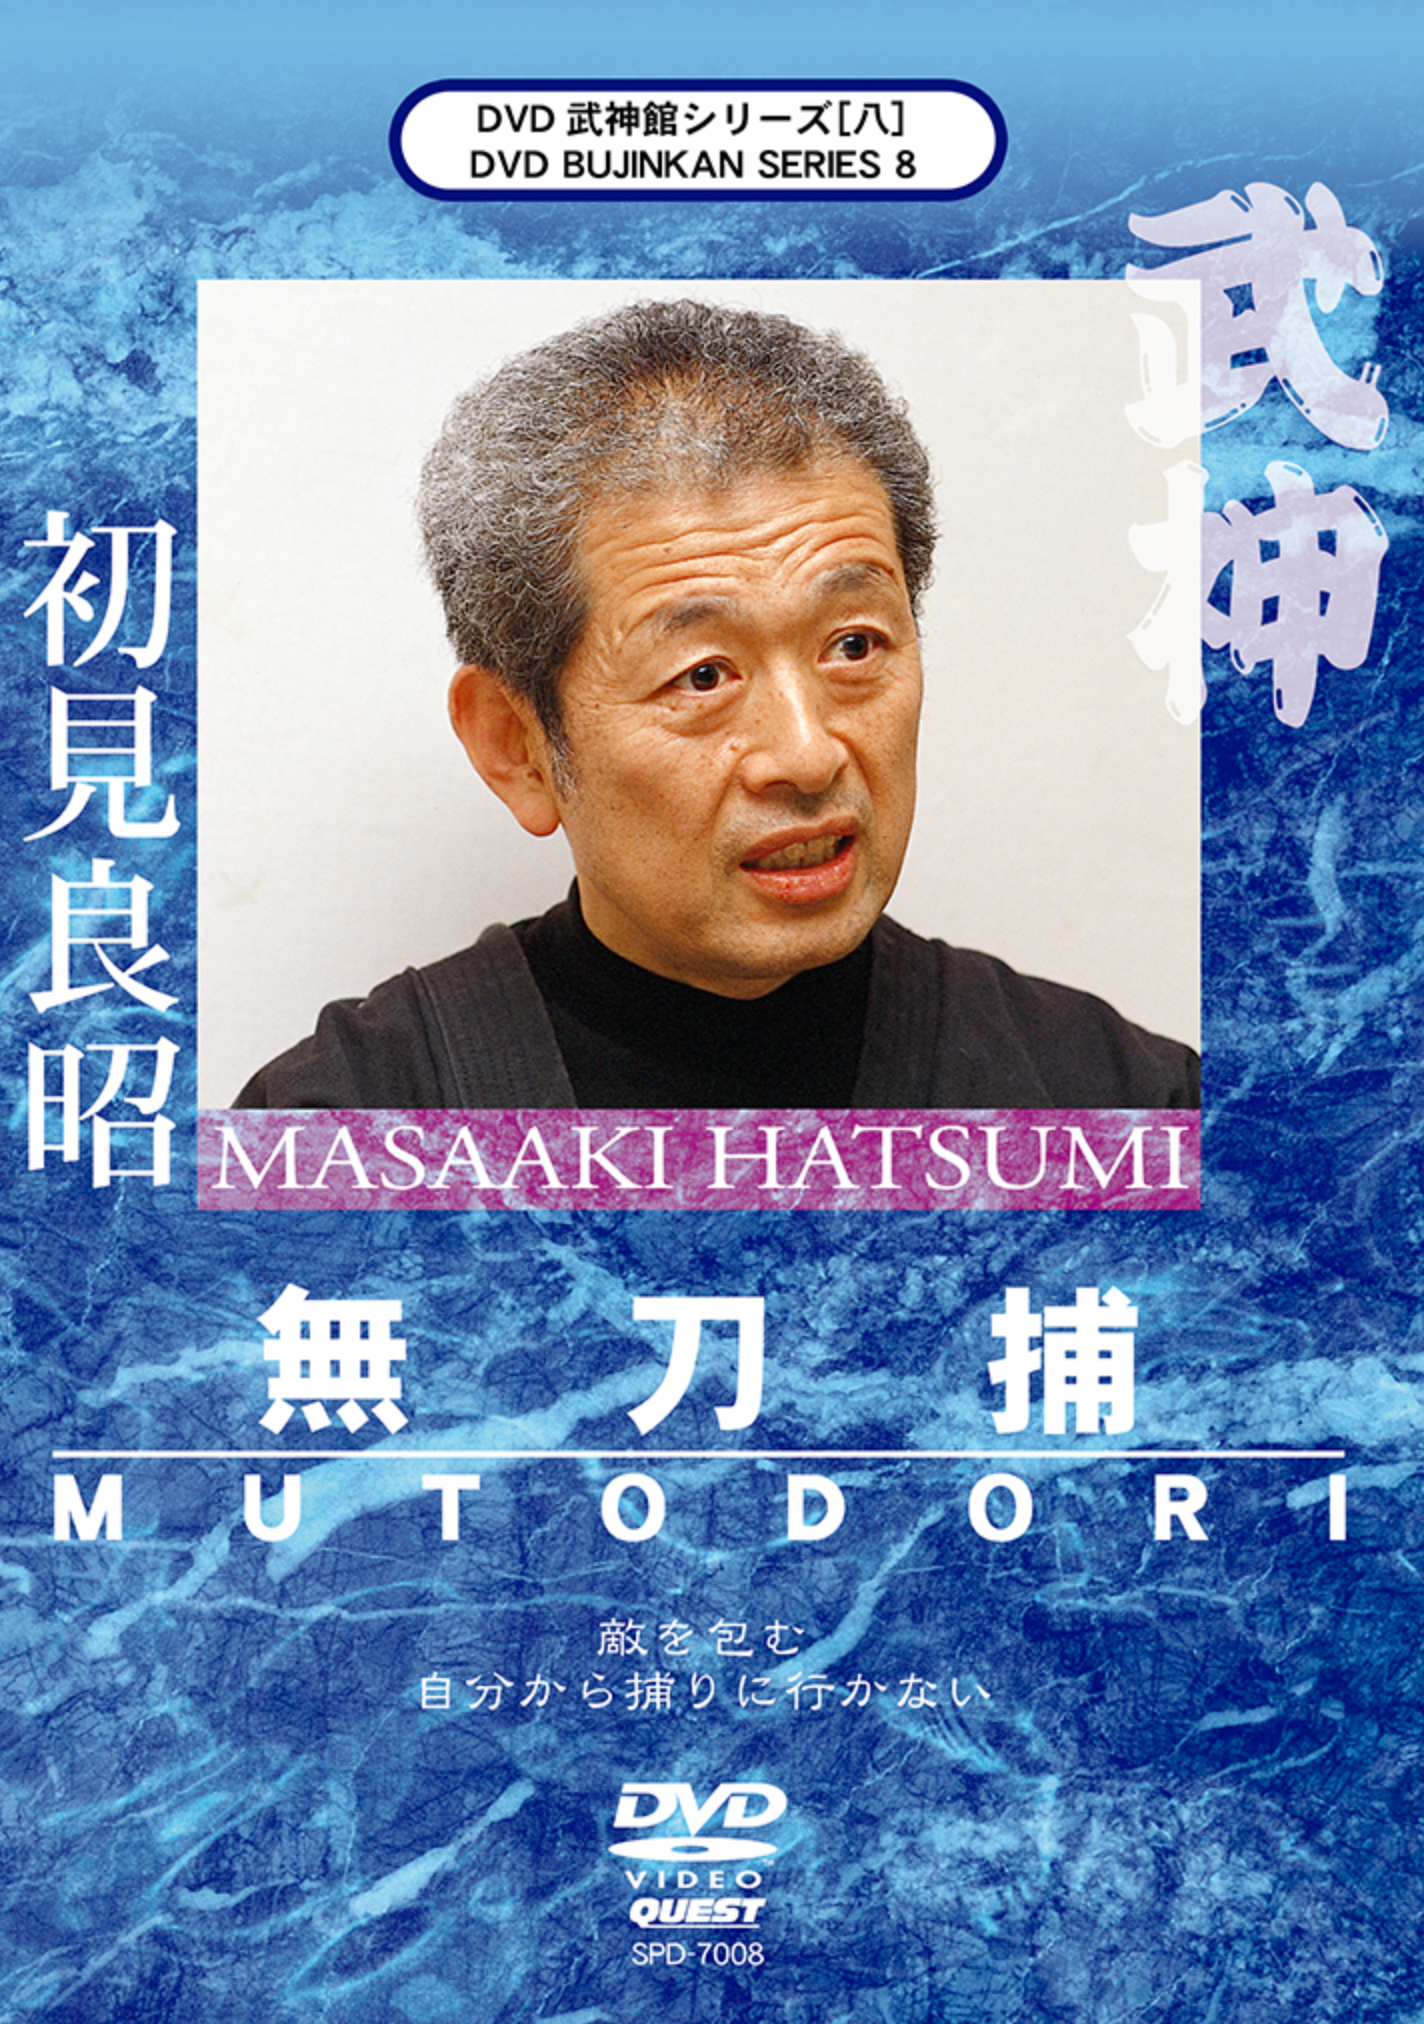 Bujinkan DVD Series 8: Mutodori with Masaaki Hatsumi - Budovideos Inc